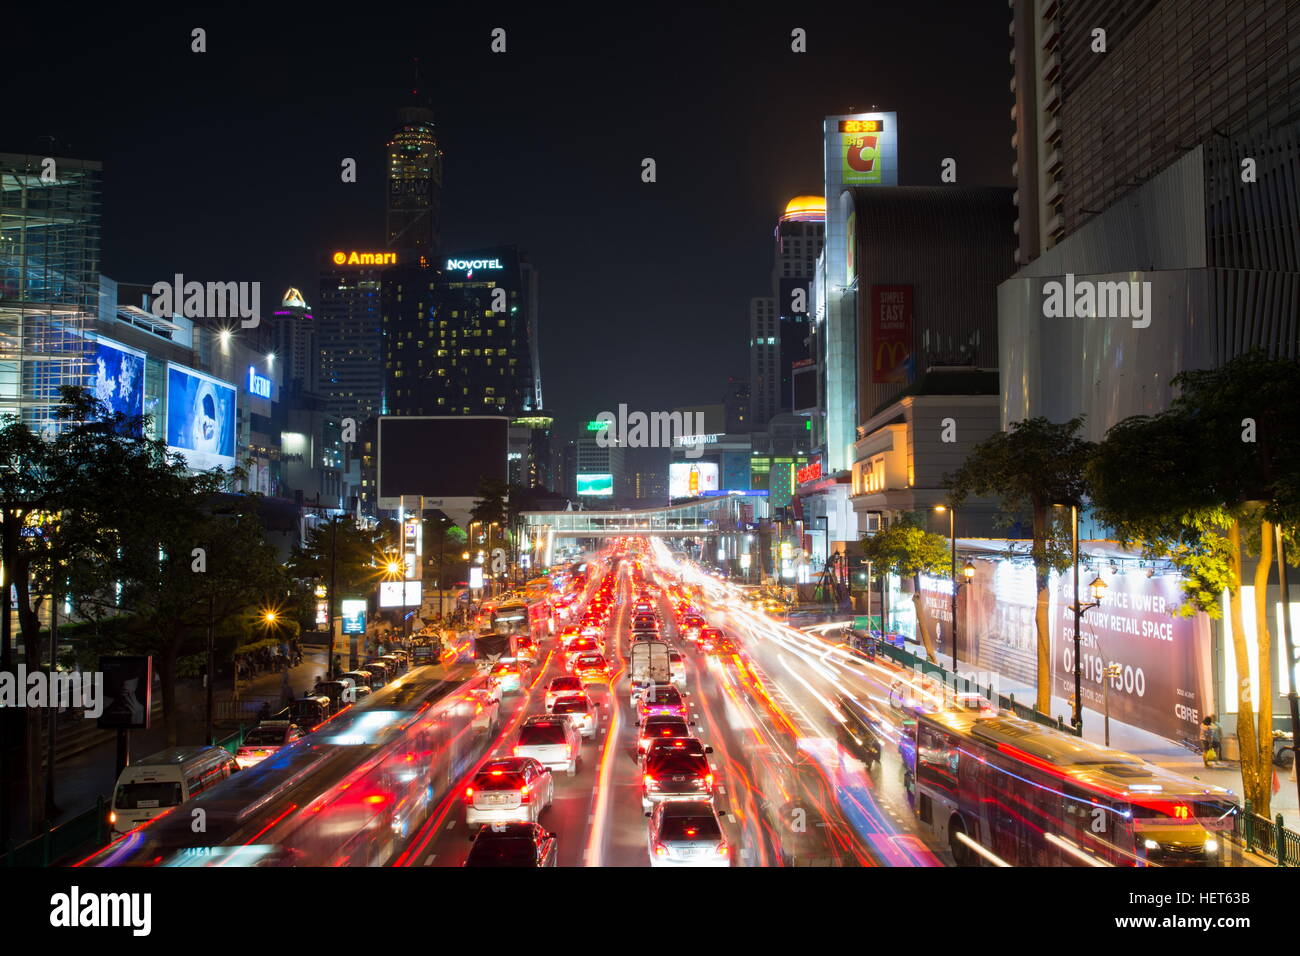 BANGKOK, Tailandia - 13 ottobre 2016: vista presso la piazza Siam traffico notturno con luce sentieri. Questa piazza è famosa area dello shopping a Bangkok Foto Stock